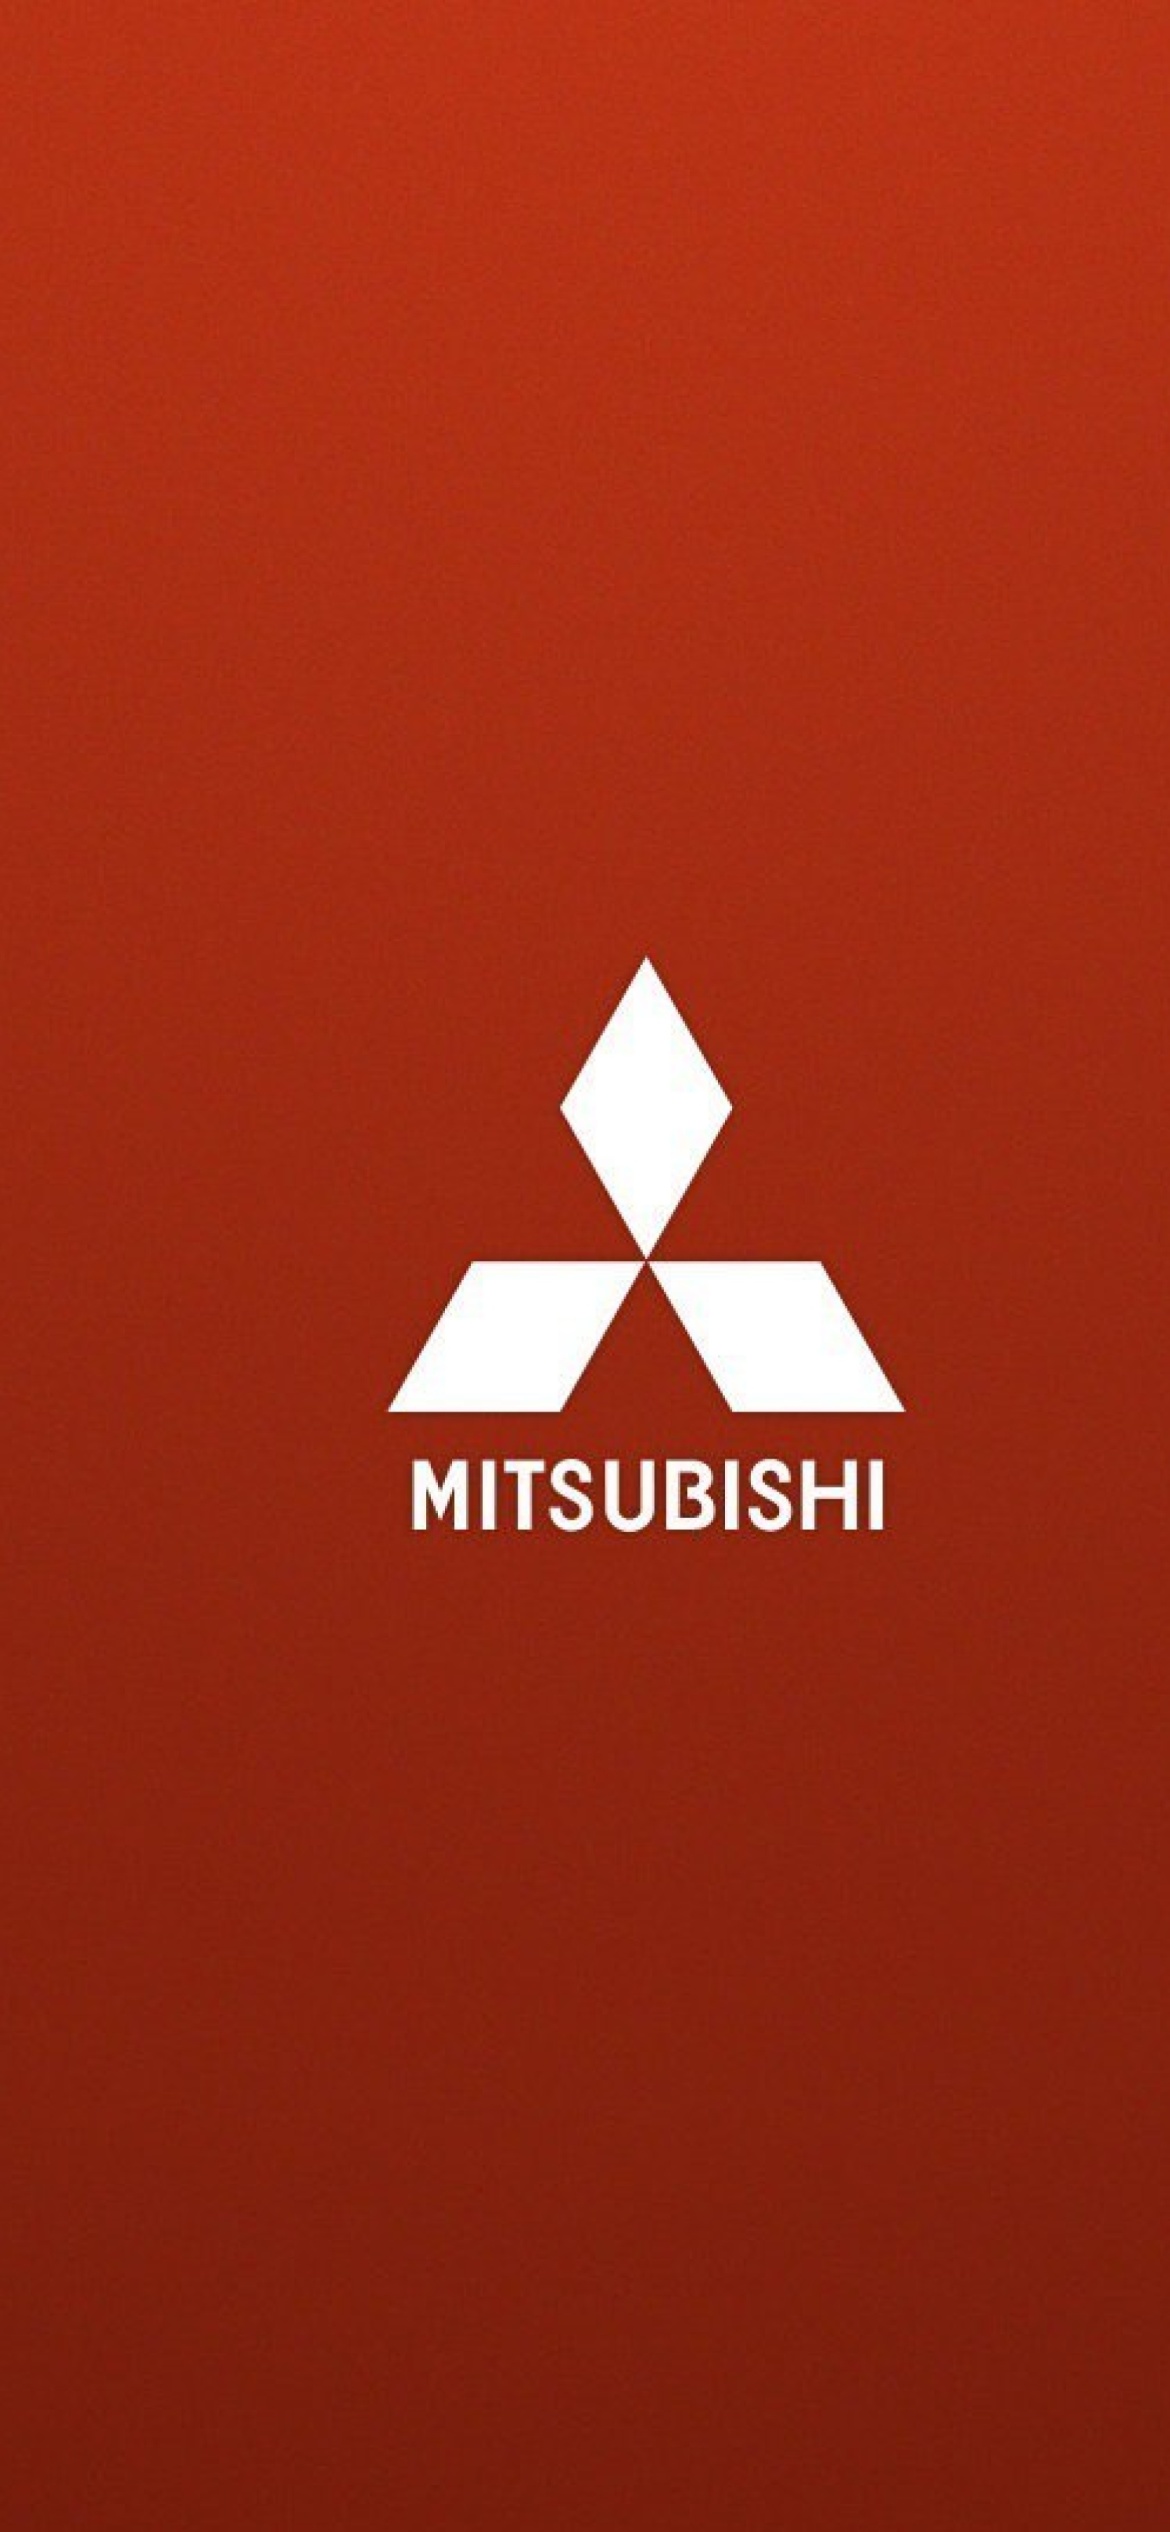 Mitsubishi logo wallpaper 1170x2532